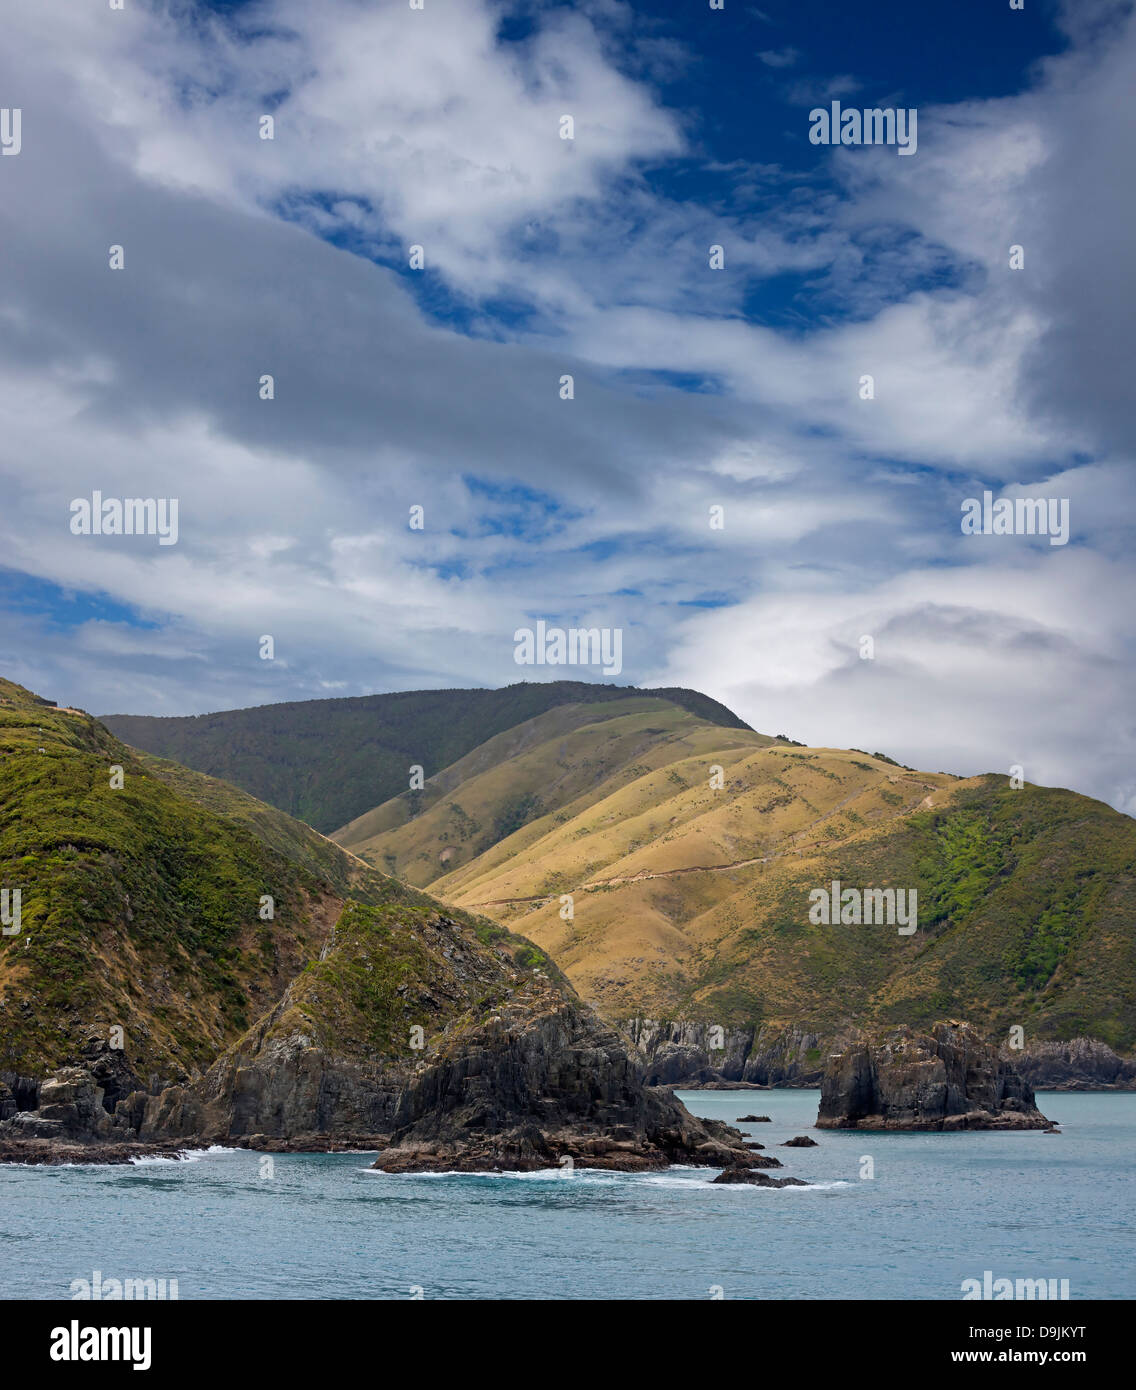 Nuova Zelanda - Mare di Tasman e Isola del Sud Foto Stock